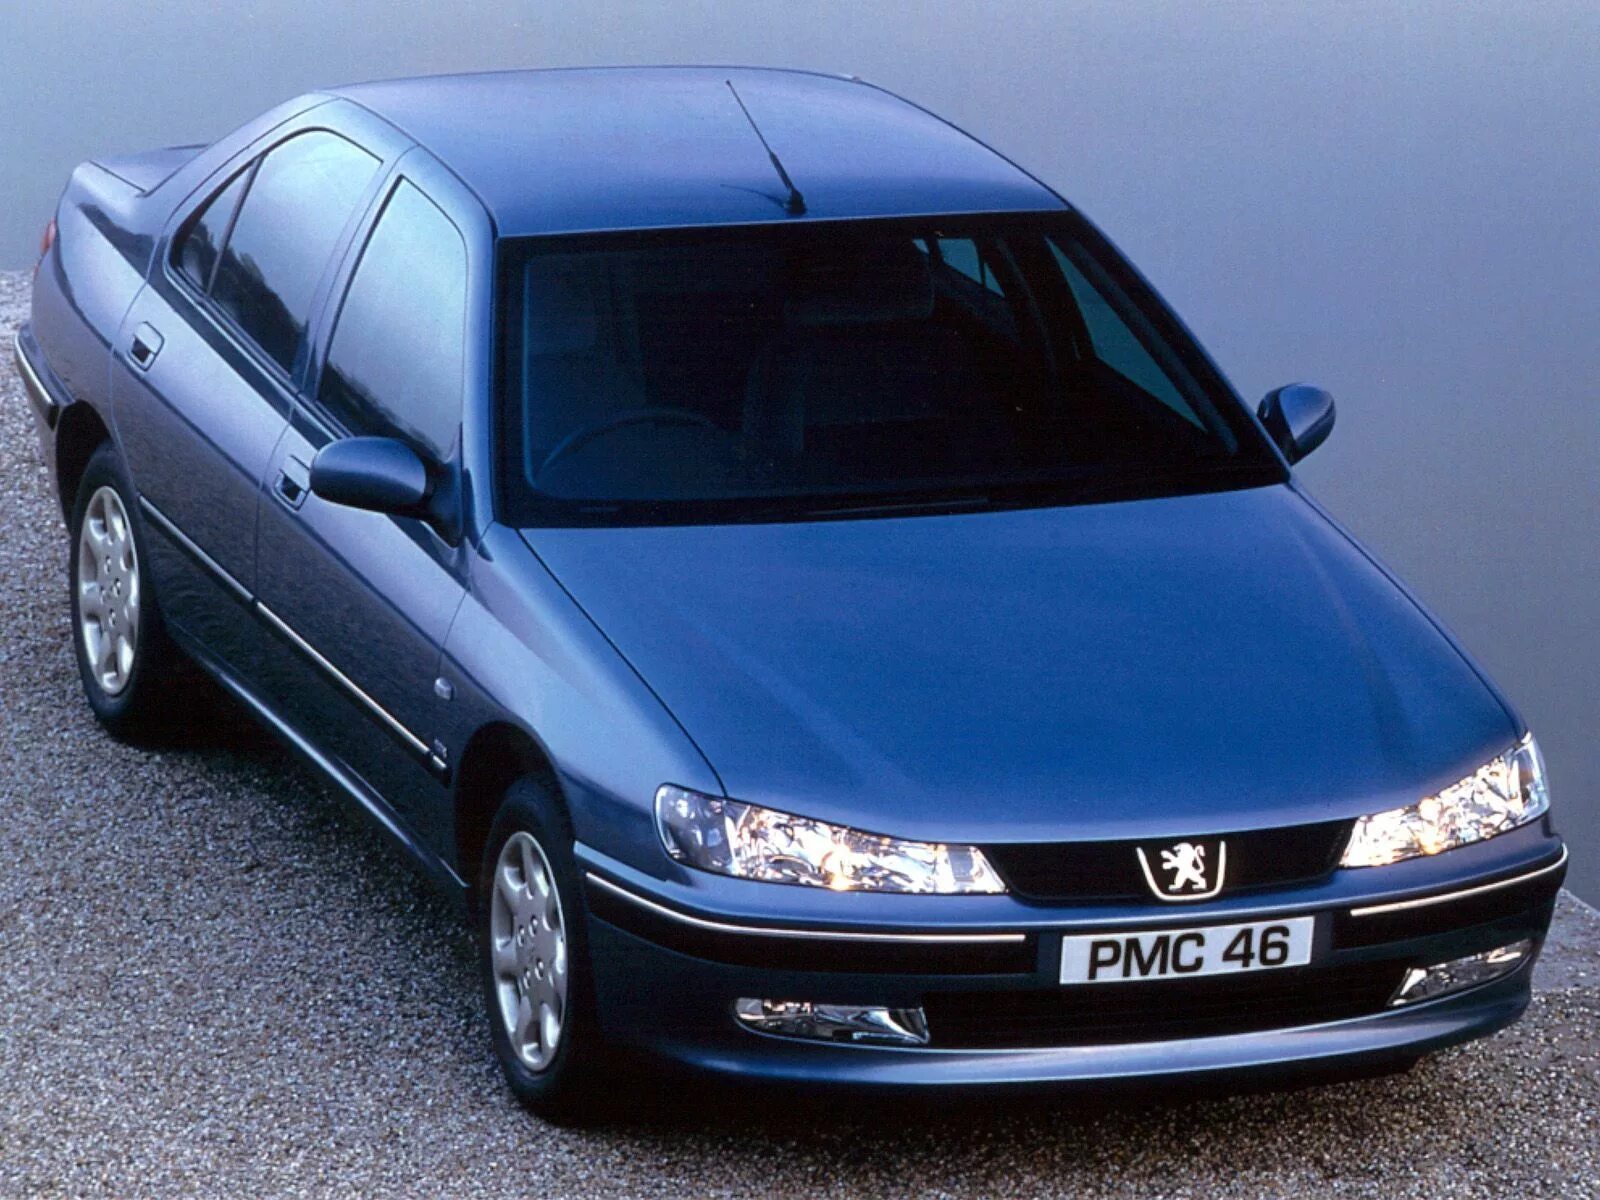 Пежо 406 седан. 406 Пежо 406. Peugeot 406 седан 1999-2004. Peugeot 406 1999. Пежо 406 купить 2 2